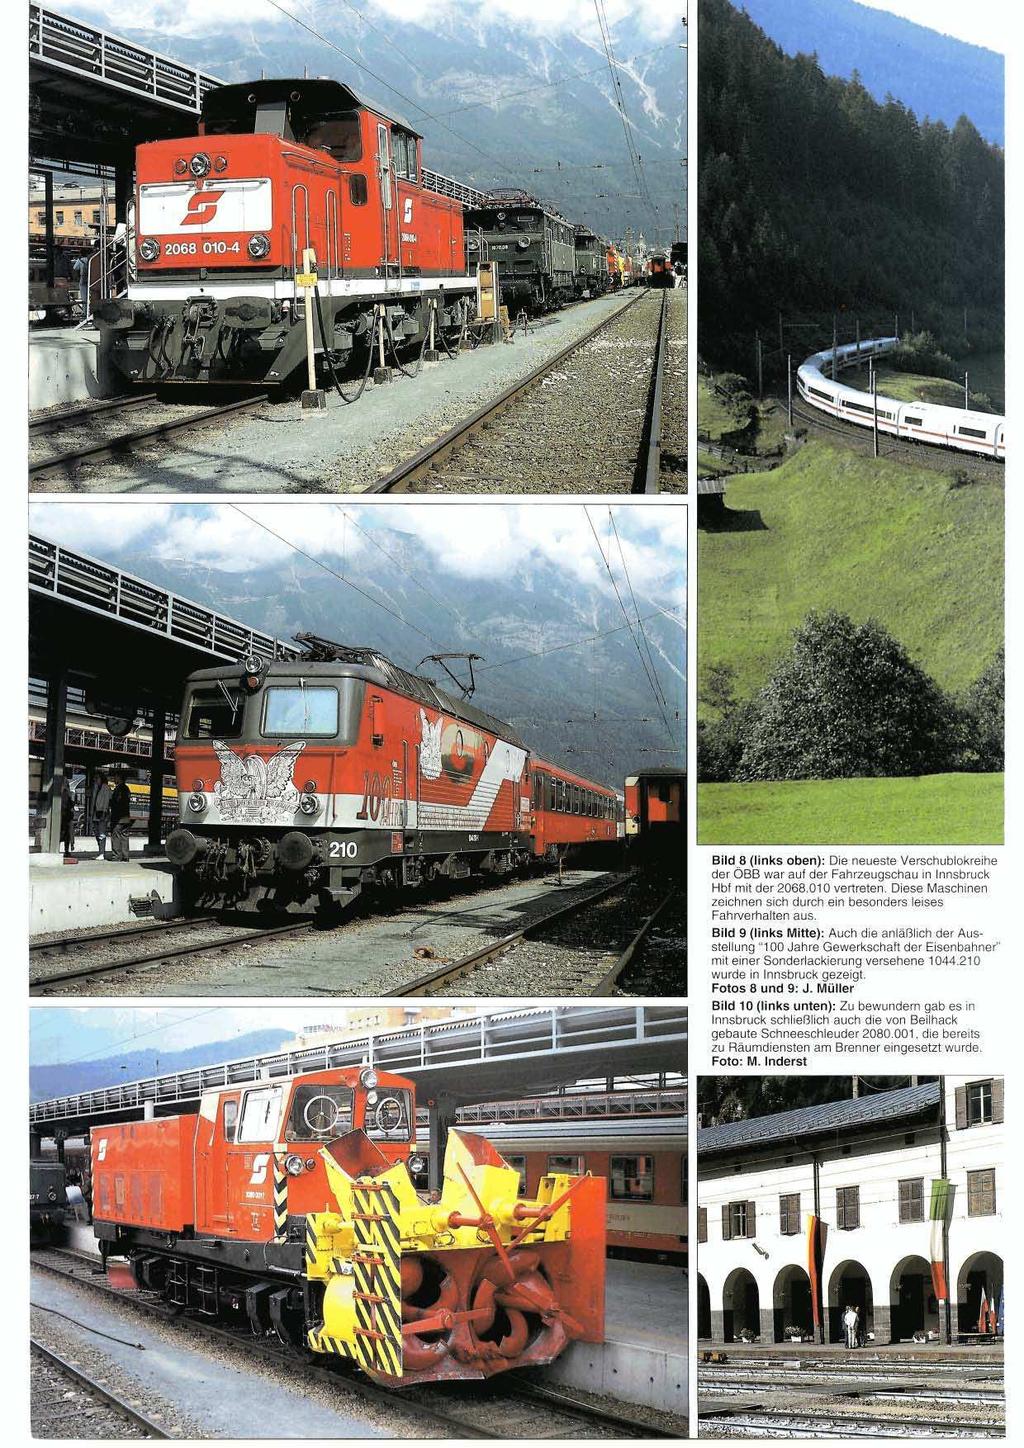 Bild.8 (links oben): Die neueste Verschublokreihe der OBB war auf der Fahrzeugschau in Innsbruck Hbf mit der 2068.010 vertreten.